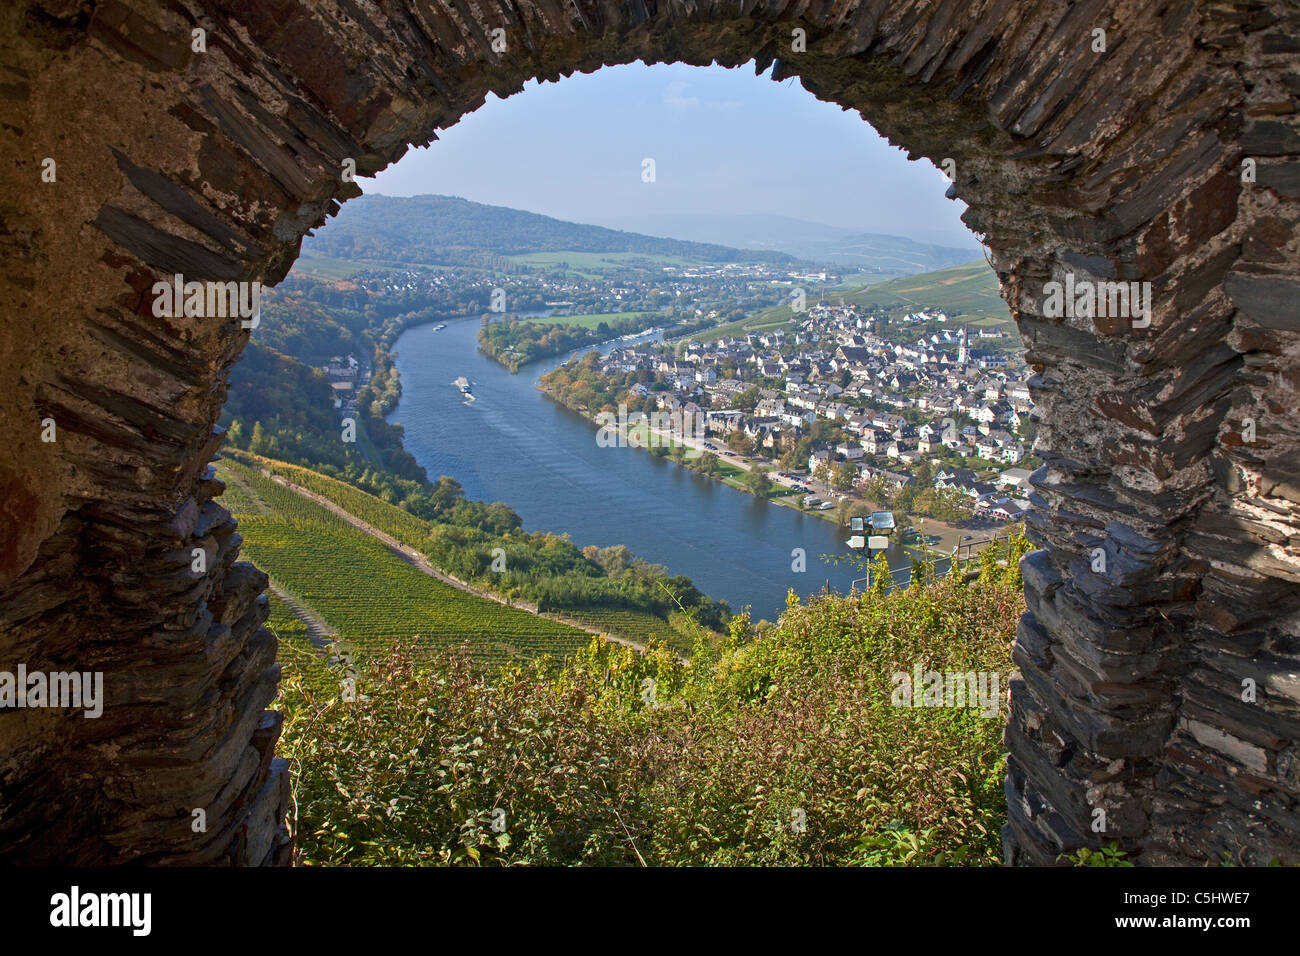 Blick von der Burg Landshut auf das Moseltal, Bernkastel-Kues, Mosel, View from the castle Landshut over the Moselle valley Stock Photo